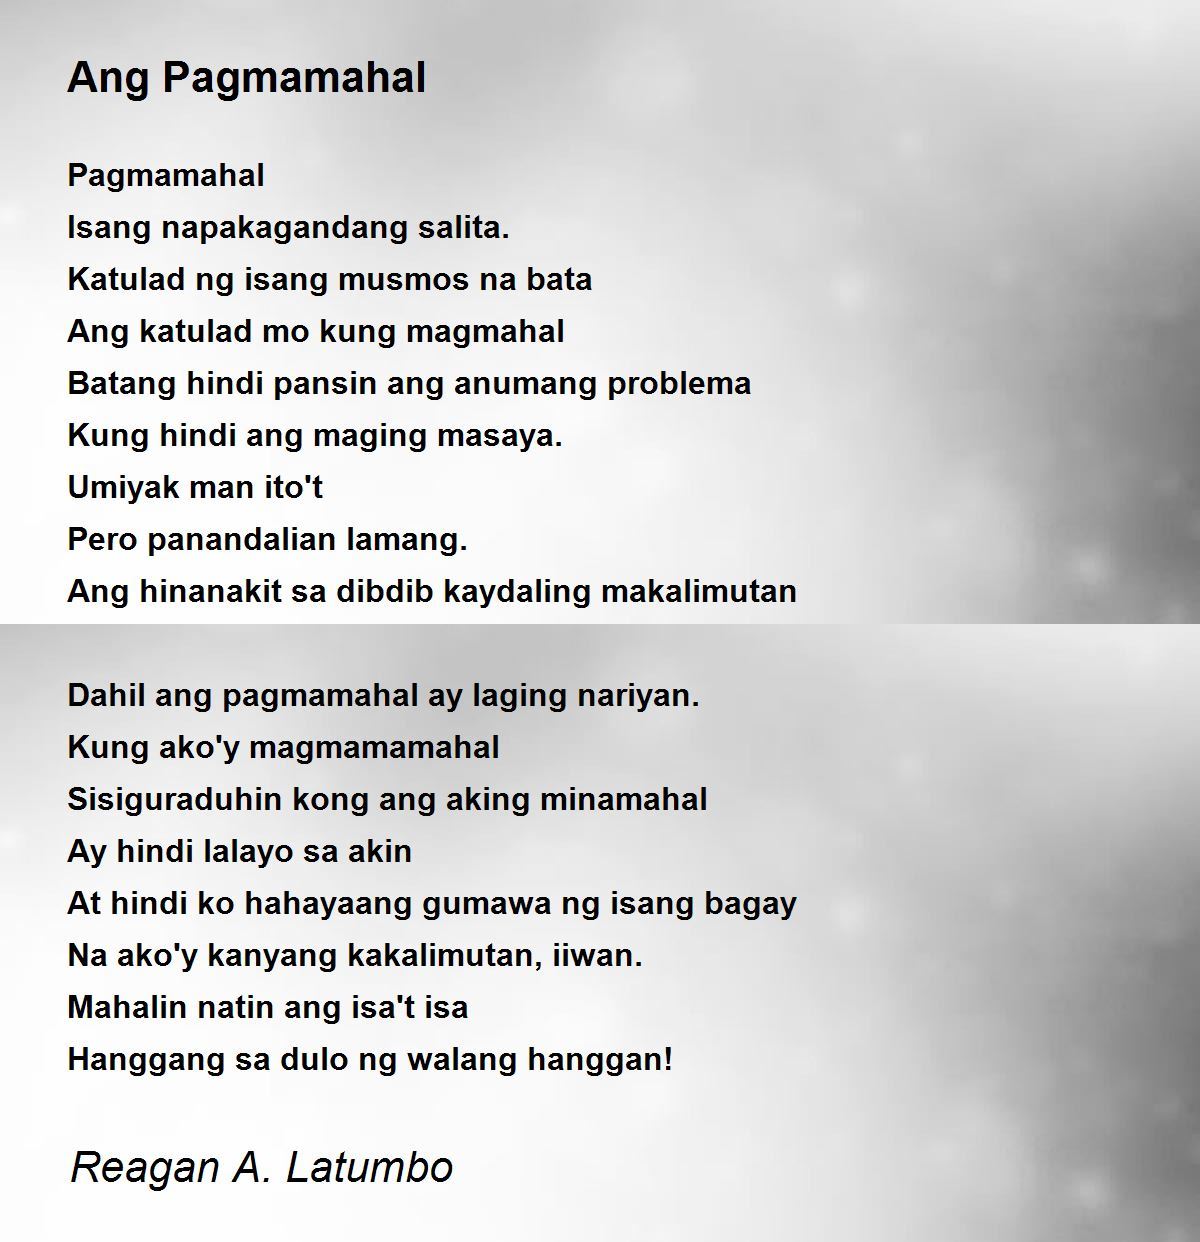 Ang Pagmamahal Poem by Reagan A. Latumbo - Poem Hunter